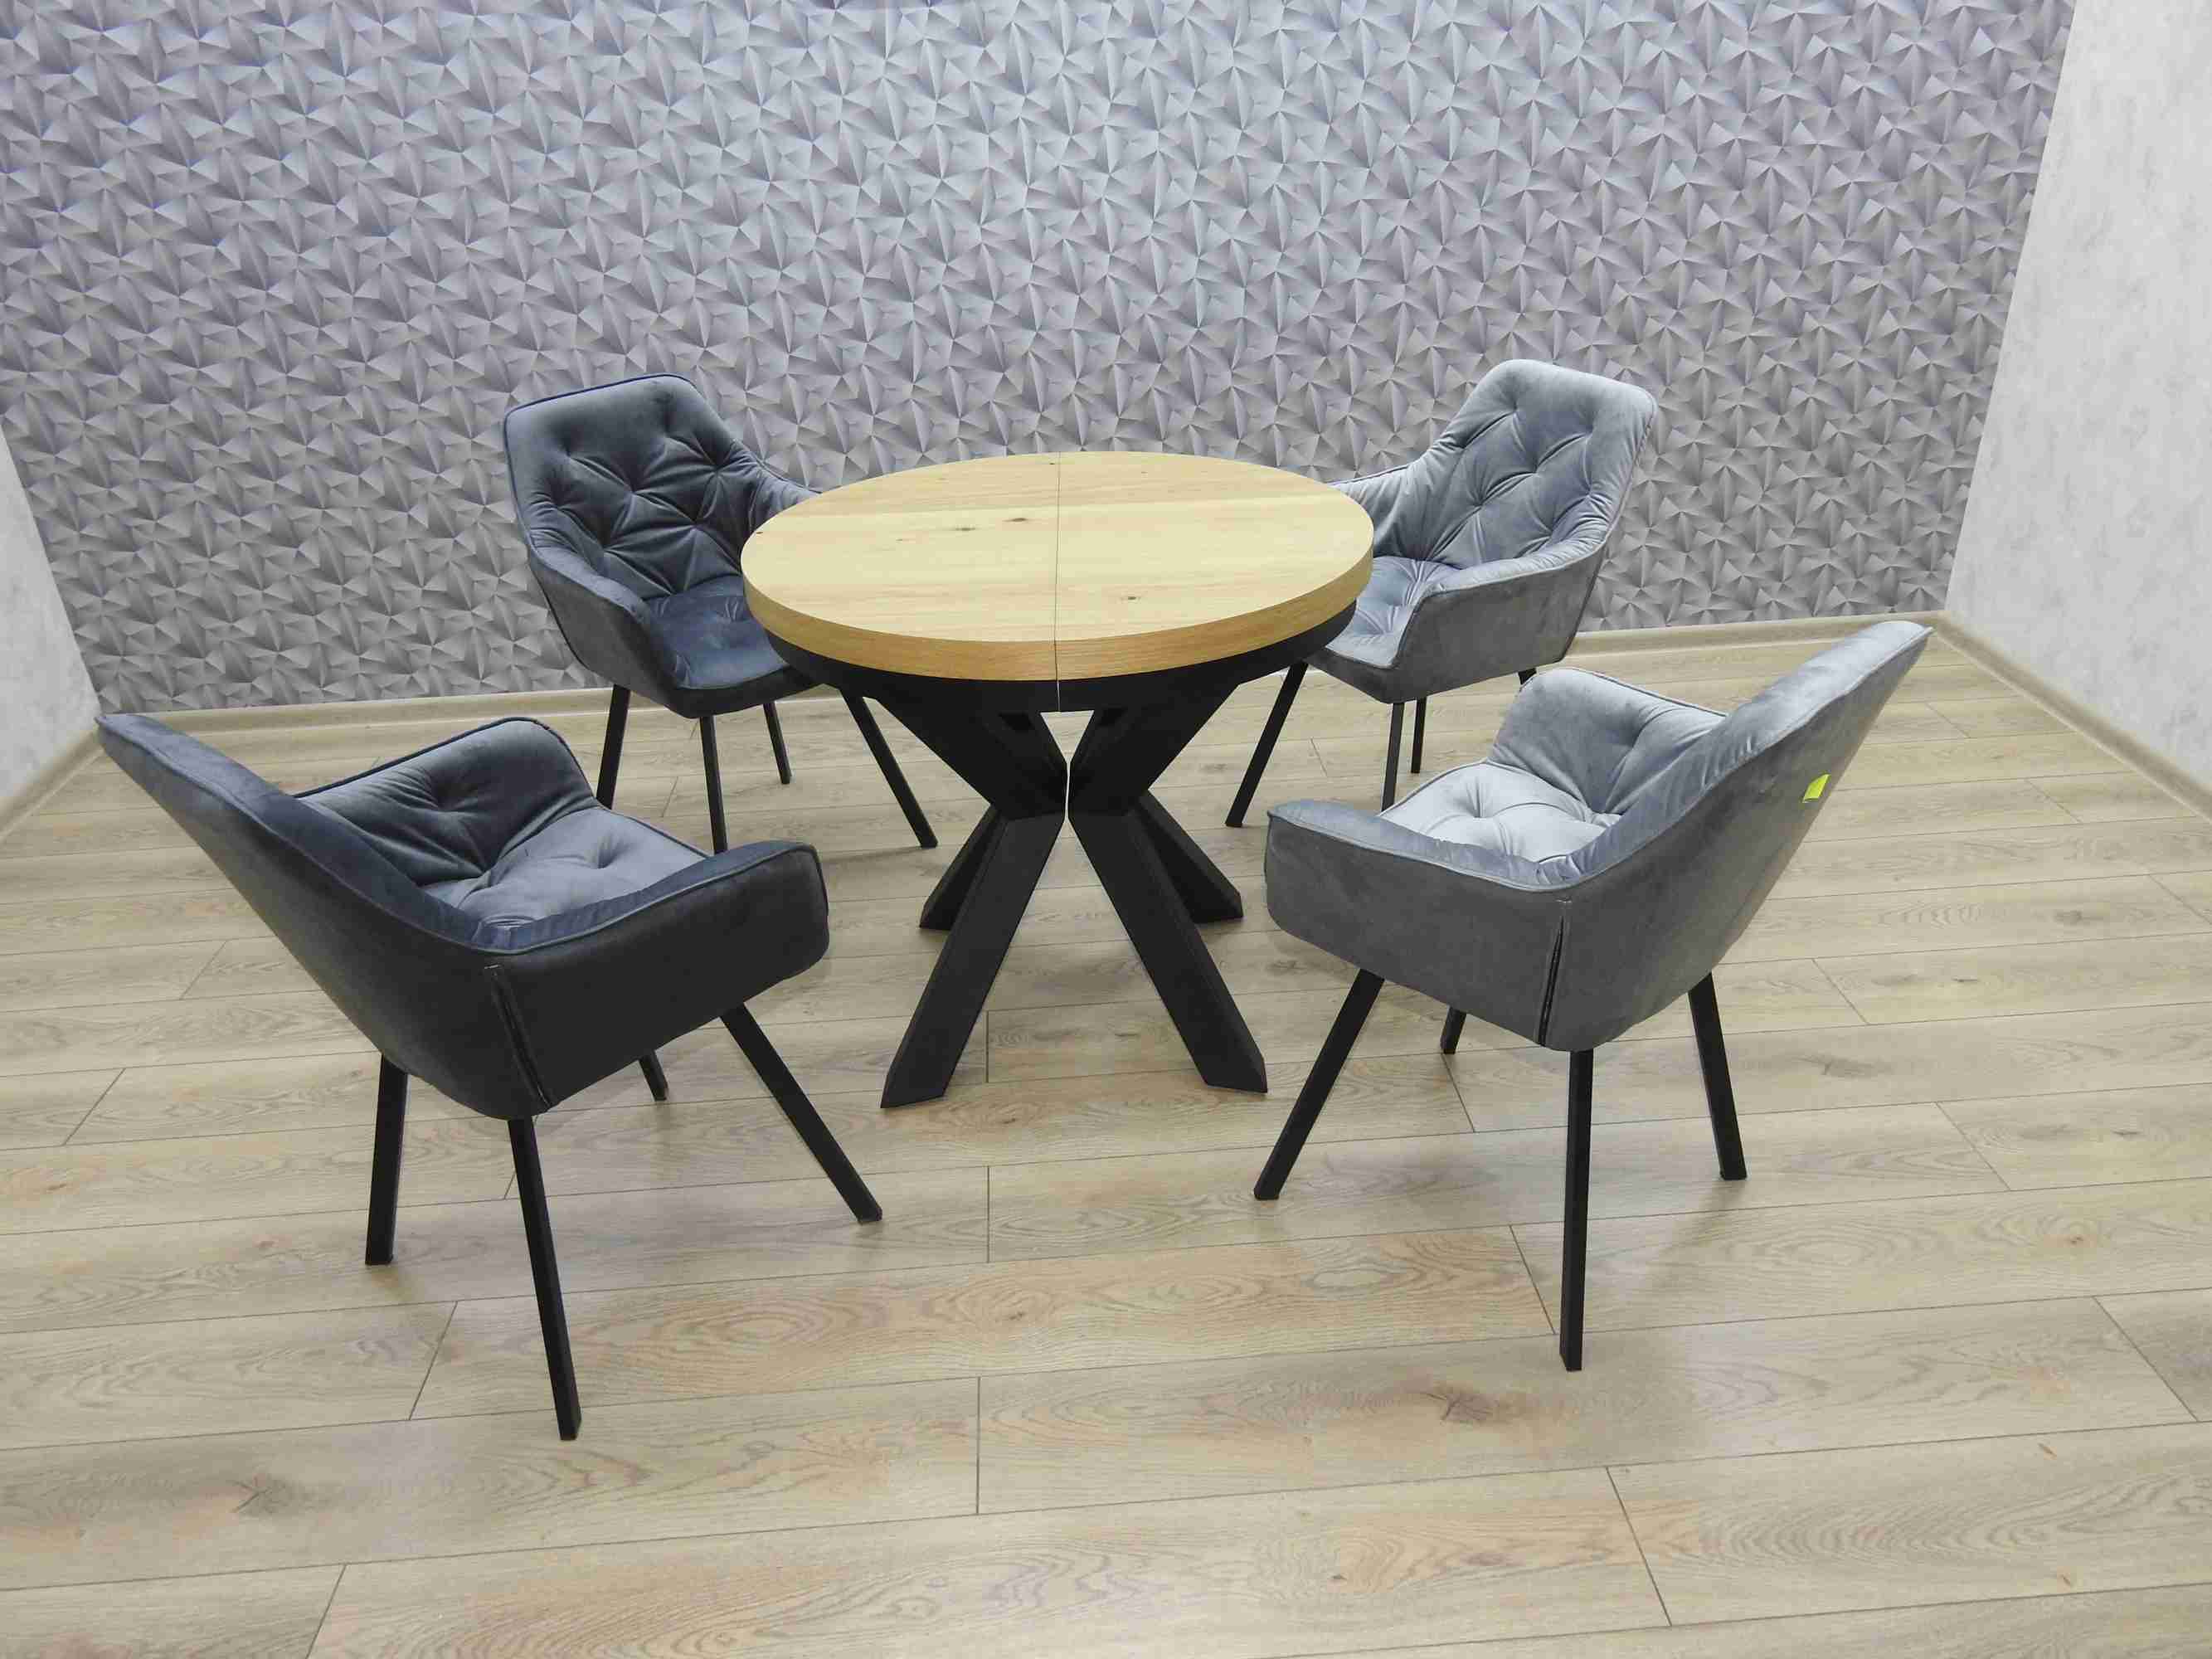 stół okrągły z 4 krzesłami welurowe szare 2 jasne i 2 ciemne zdjęcie 1